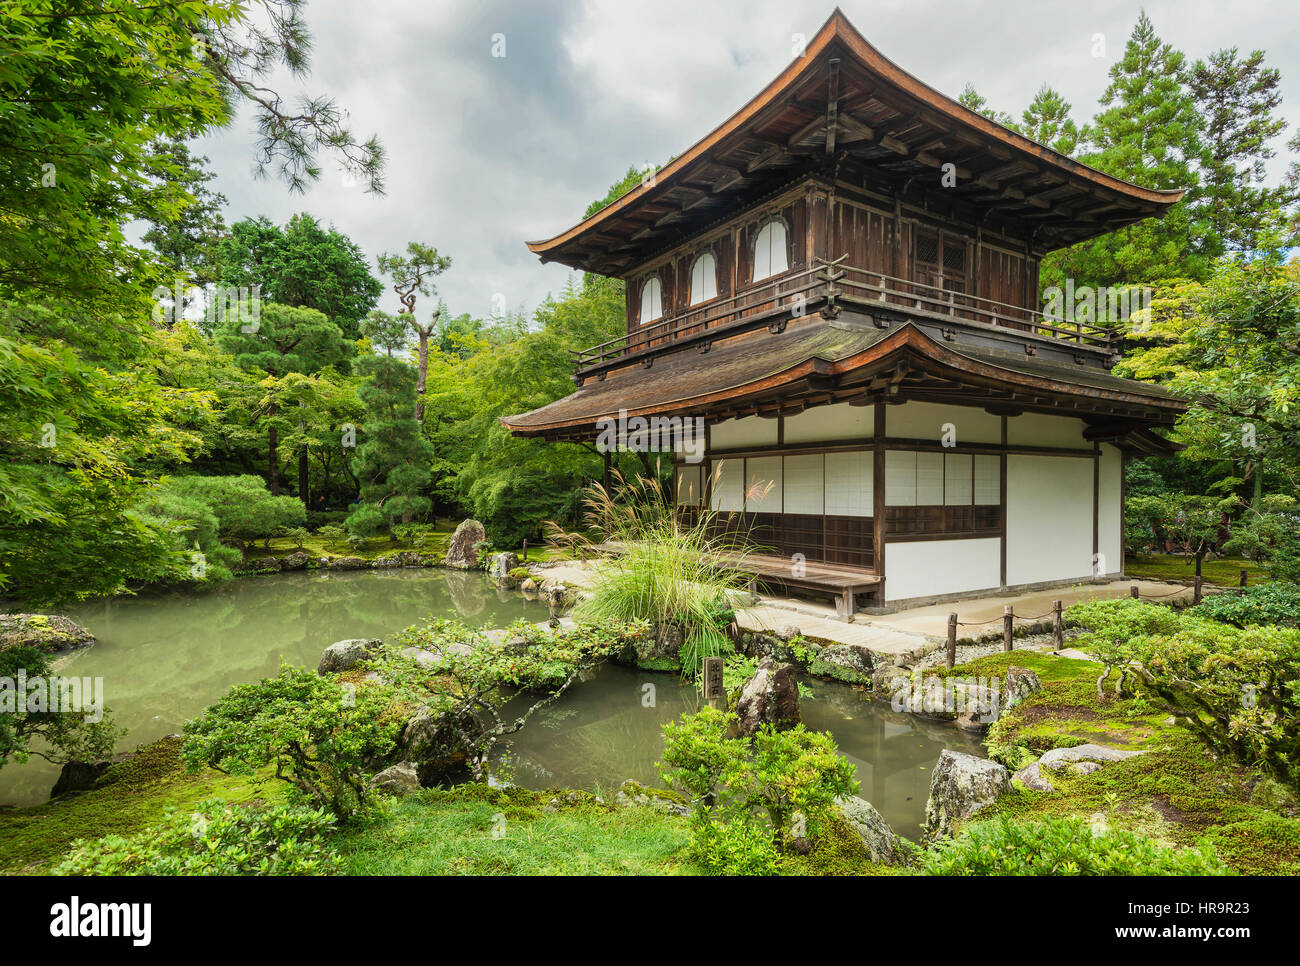 Ginkaku-ji, officiellement nommée Jisho-ji, est un temple Zen dans le quartier de Sakyo Kyoto, Japon. C'est l'une des constructions qui représente le Higashiya Banque D'Images